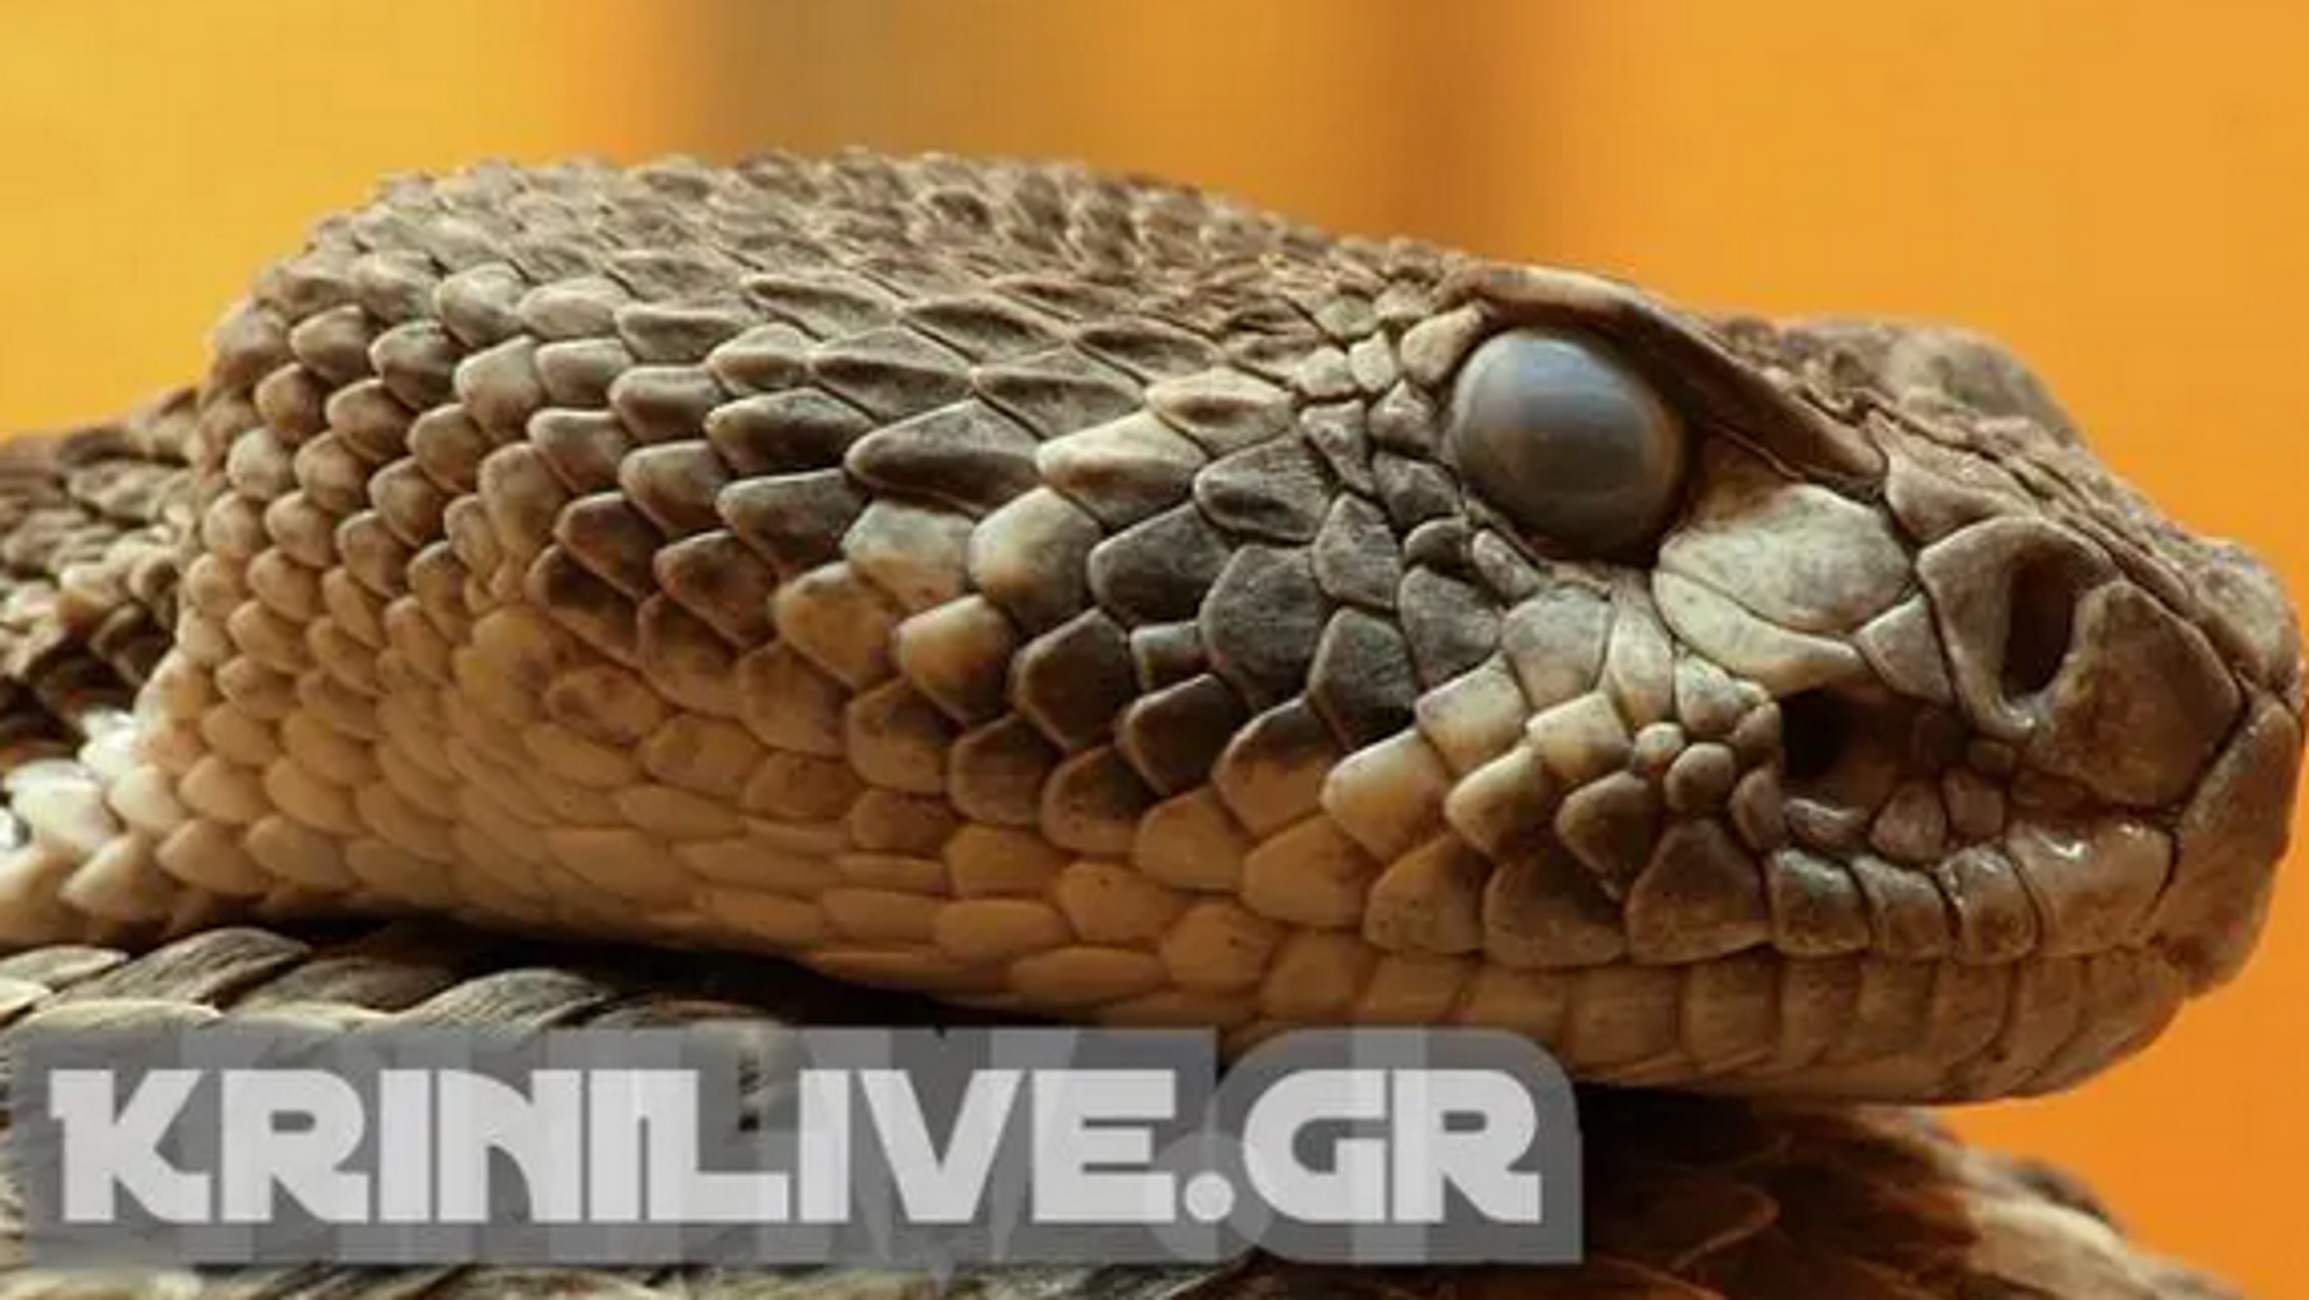 Τρίκαλα: Αυτό είναι το φίδι που προκάλεσε πανικό σε νηπιαγωγείο – Δείτε πού κρύφτηκε η οχιά